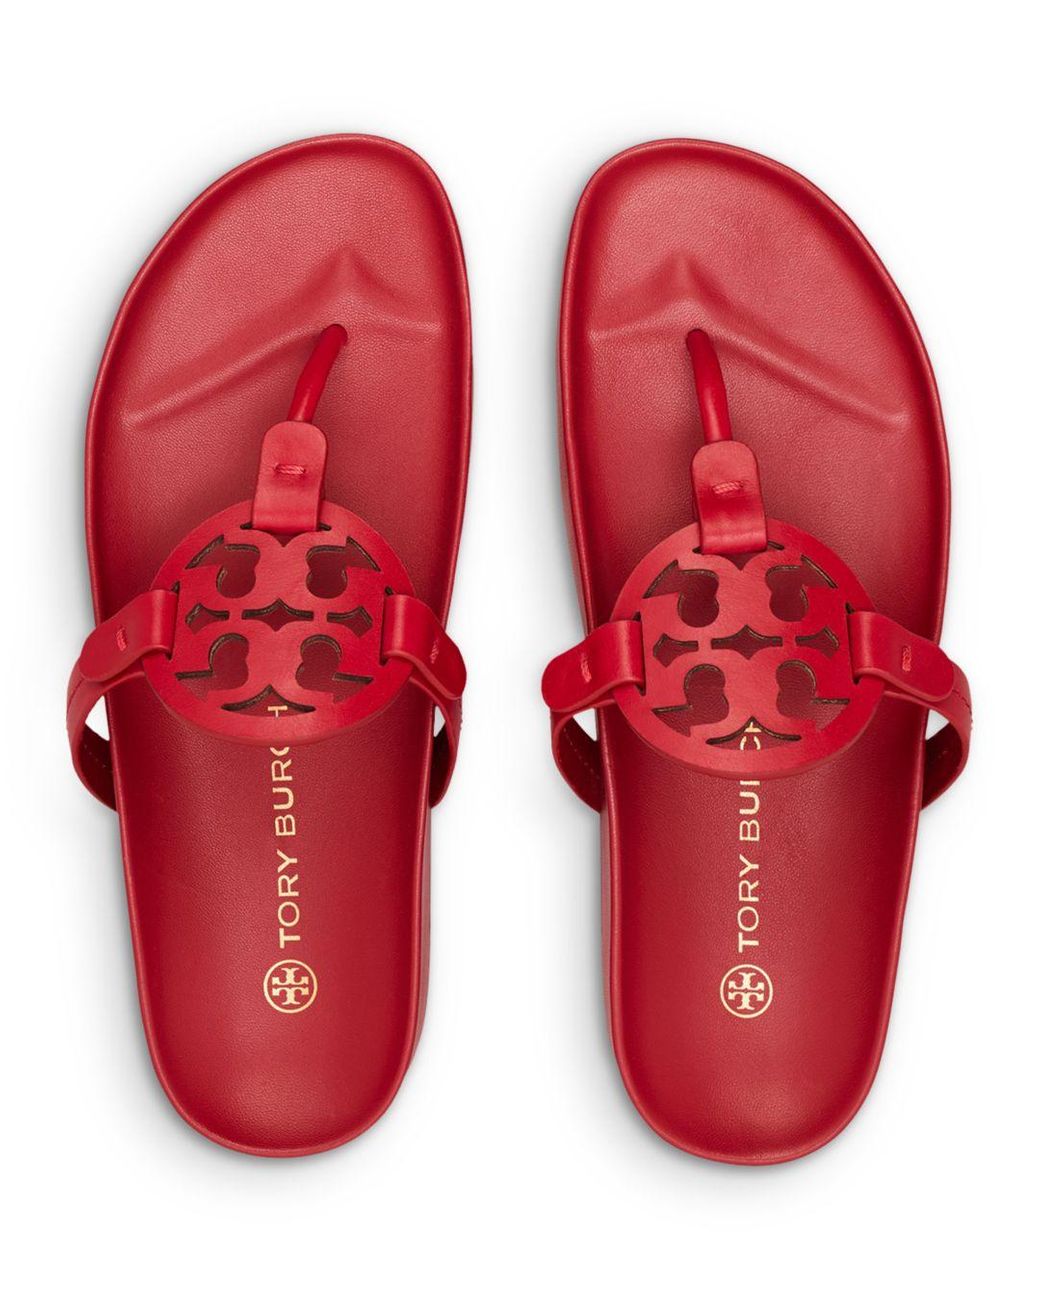 Tory Burch Women's Red Miller Cloud Thong Sandals